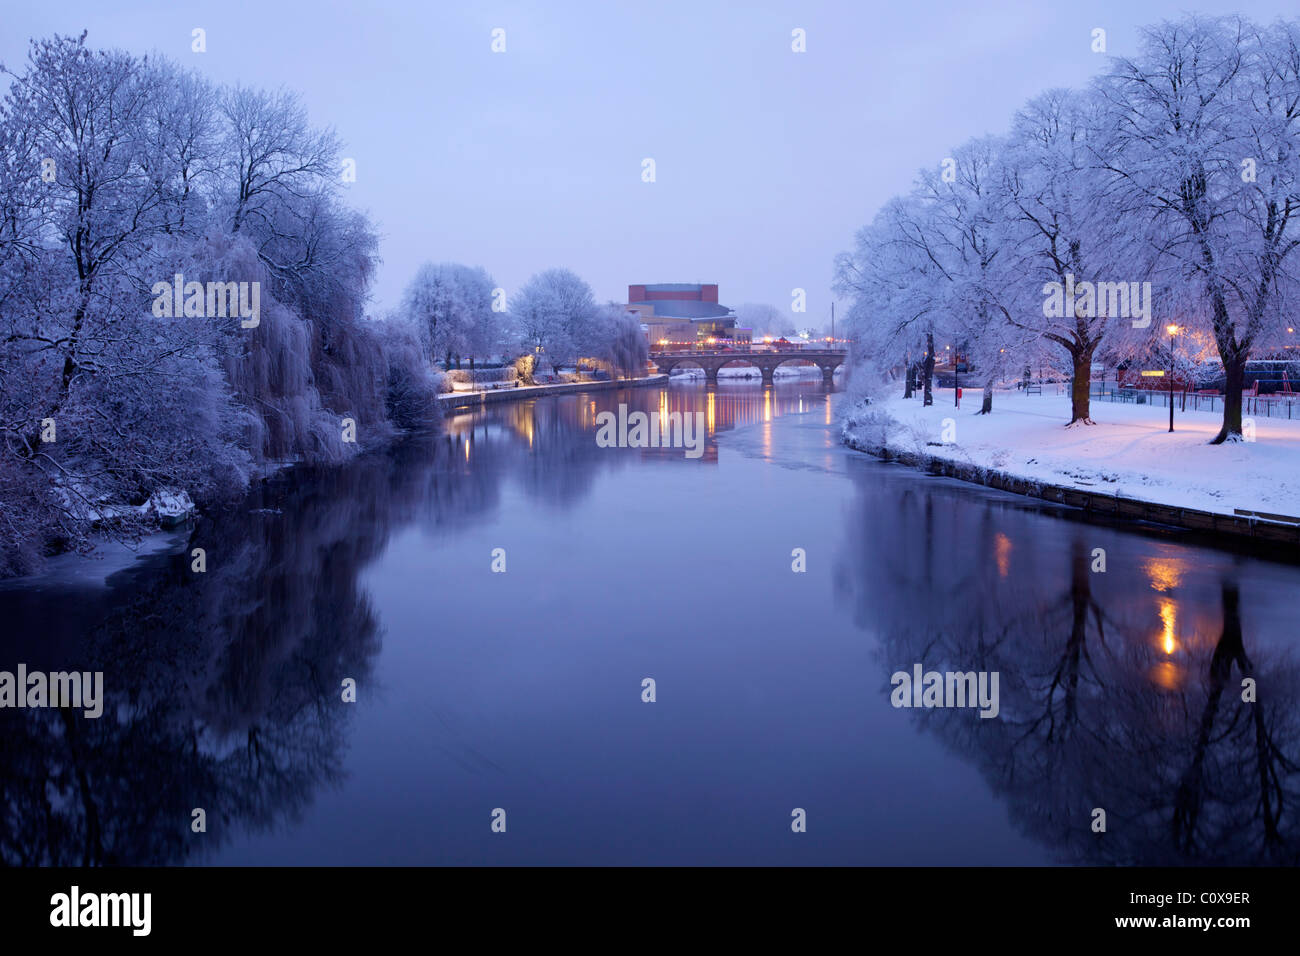 Winter-Szene in der Abenddämmerung, Waliser Brücke, Fluss Severn, Shrewsbury, Shropshire, England, UK, Vereinigtes Königreich, GB, Großbritannien Stockfoto